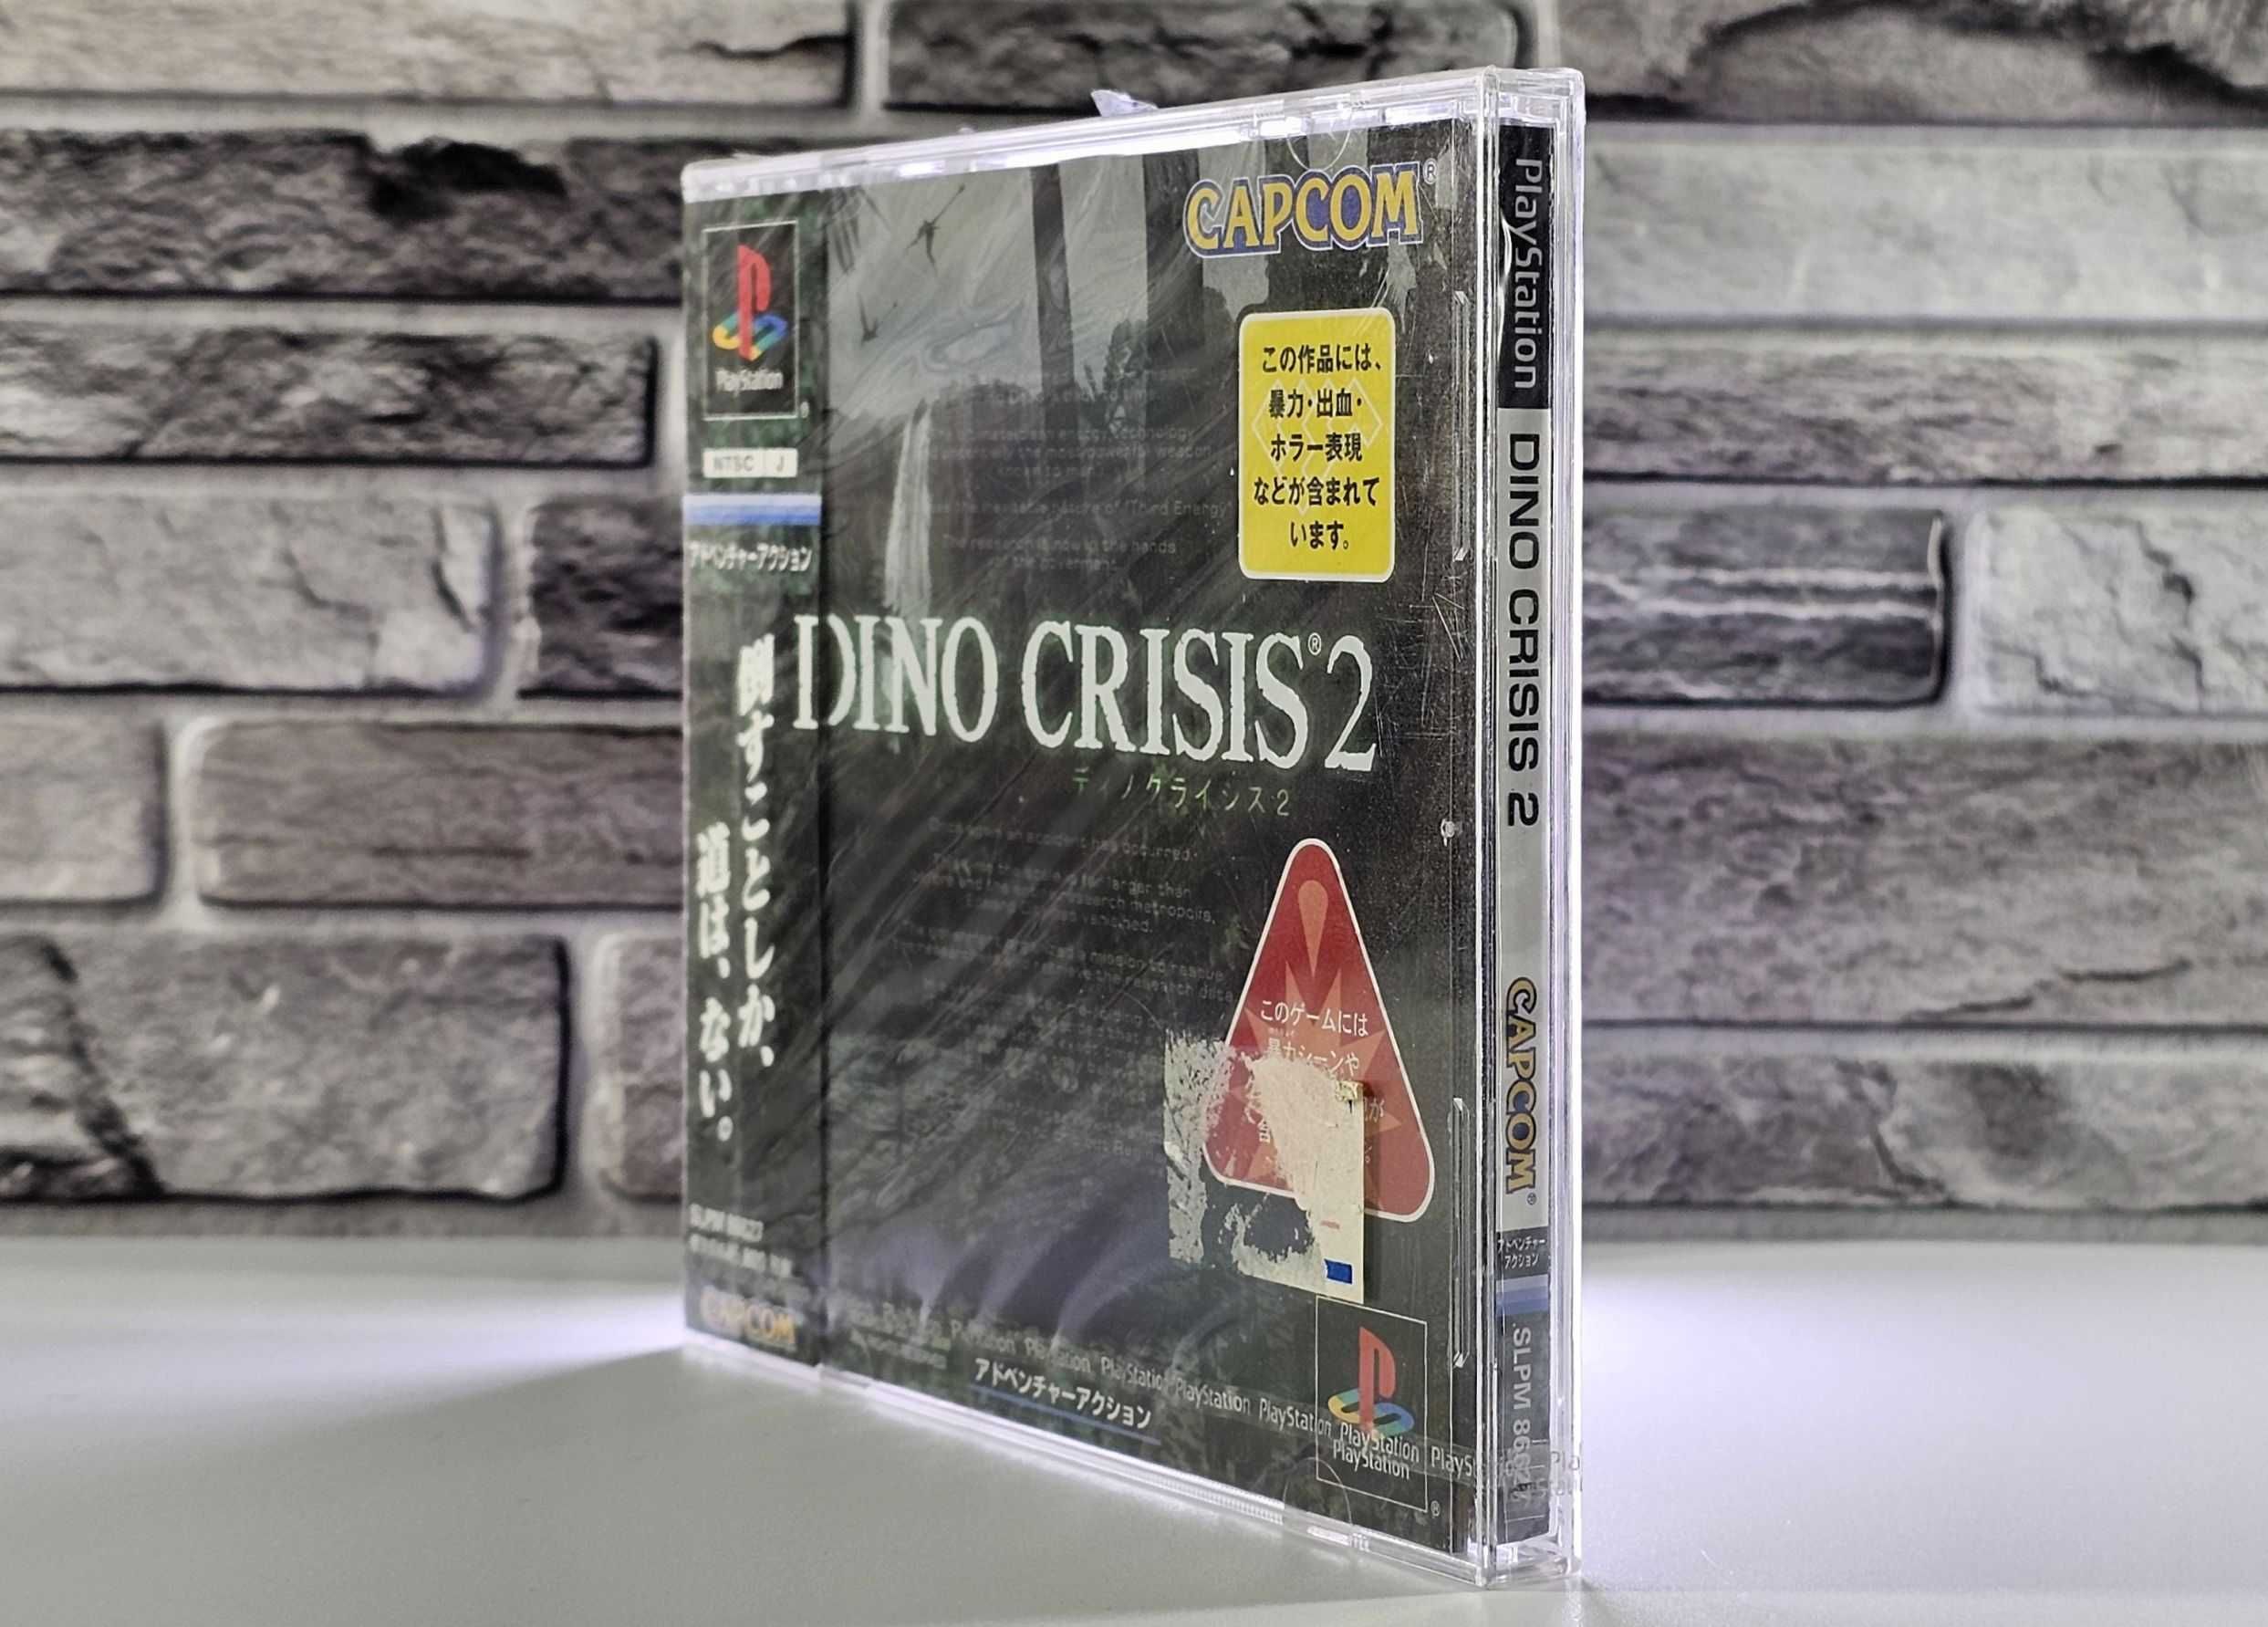 Playstation fabrycznie NOWY Dino Crisis 2